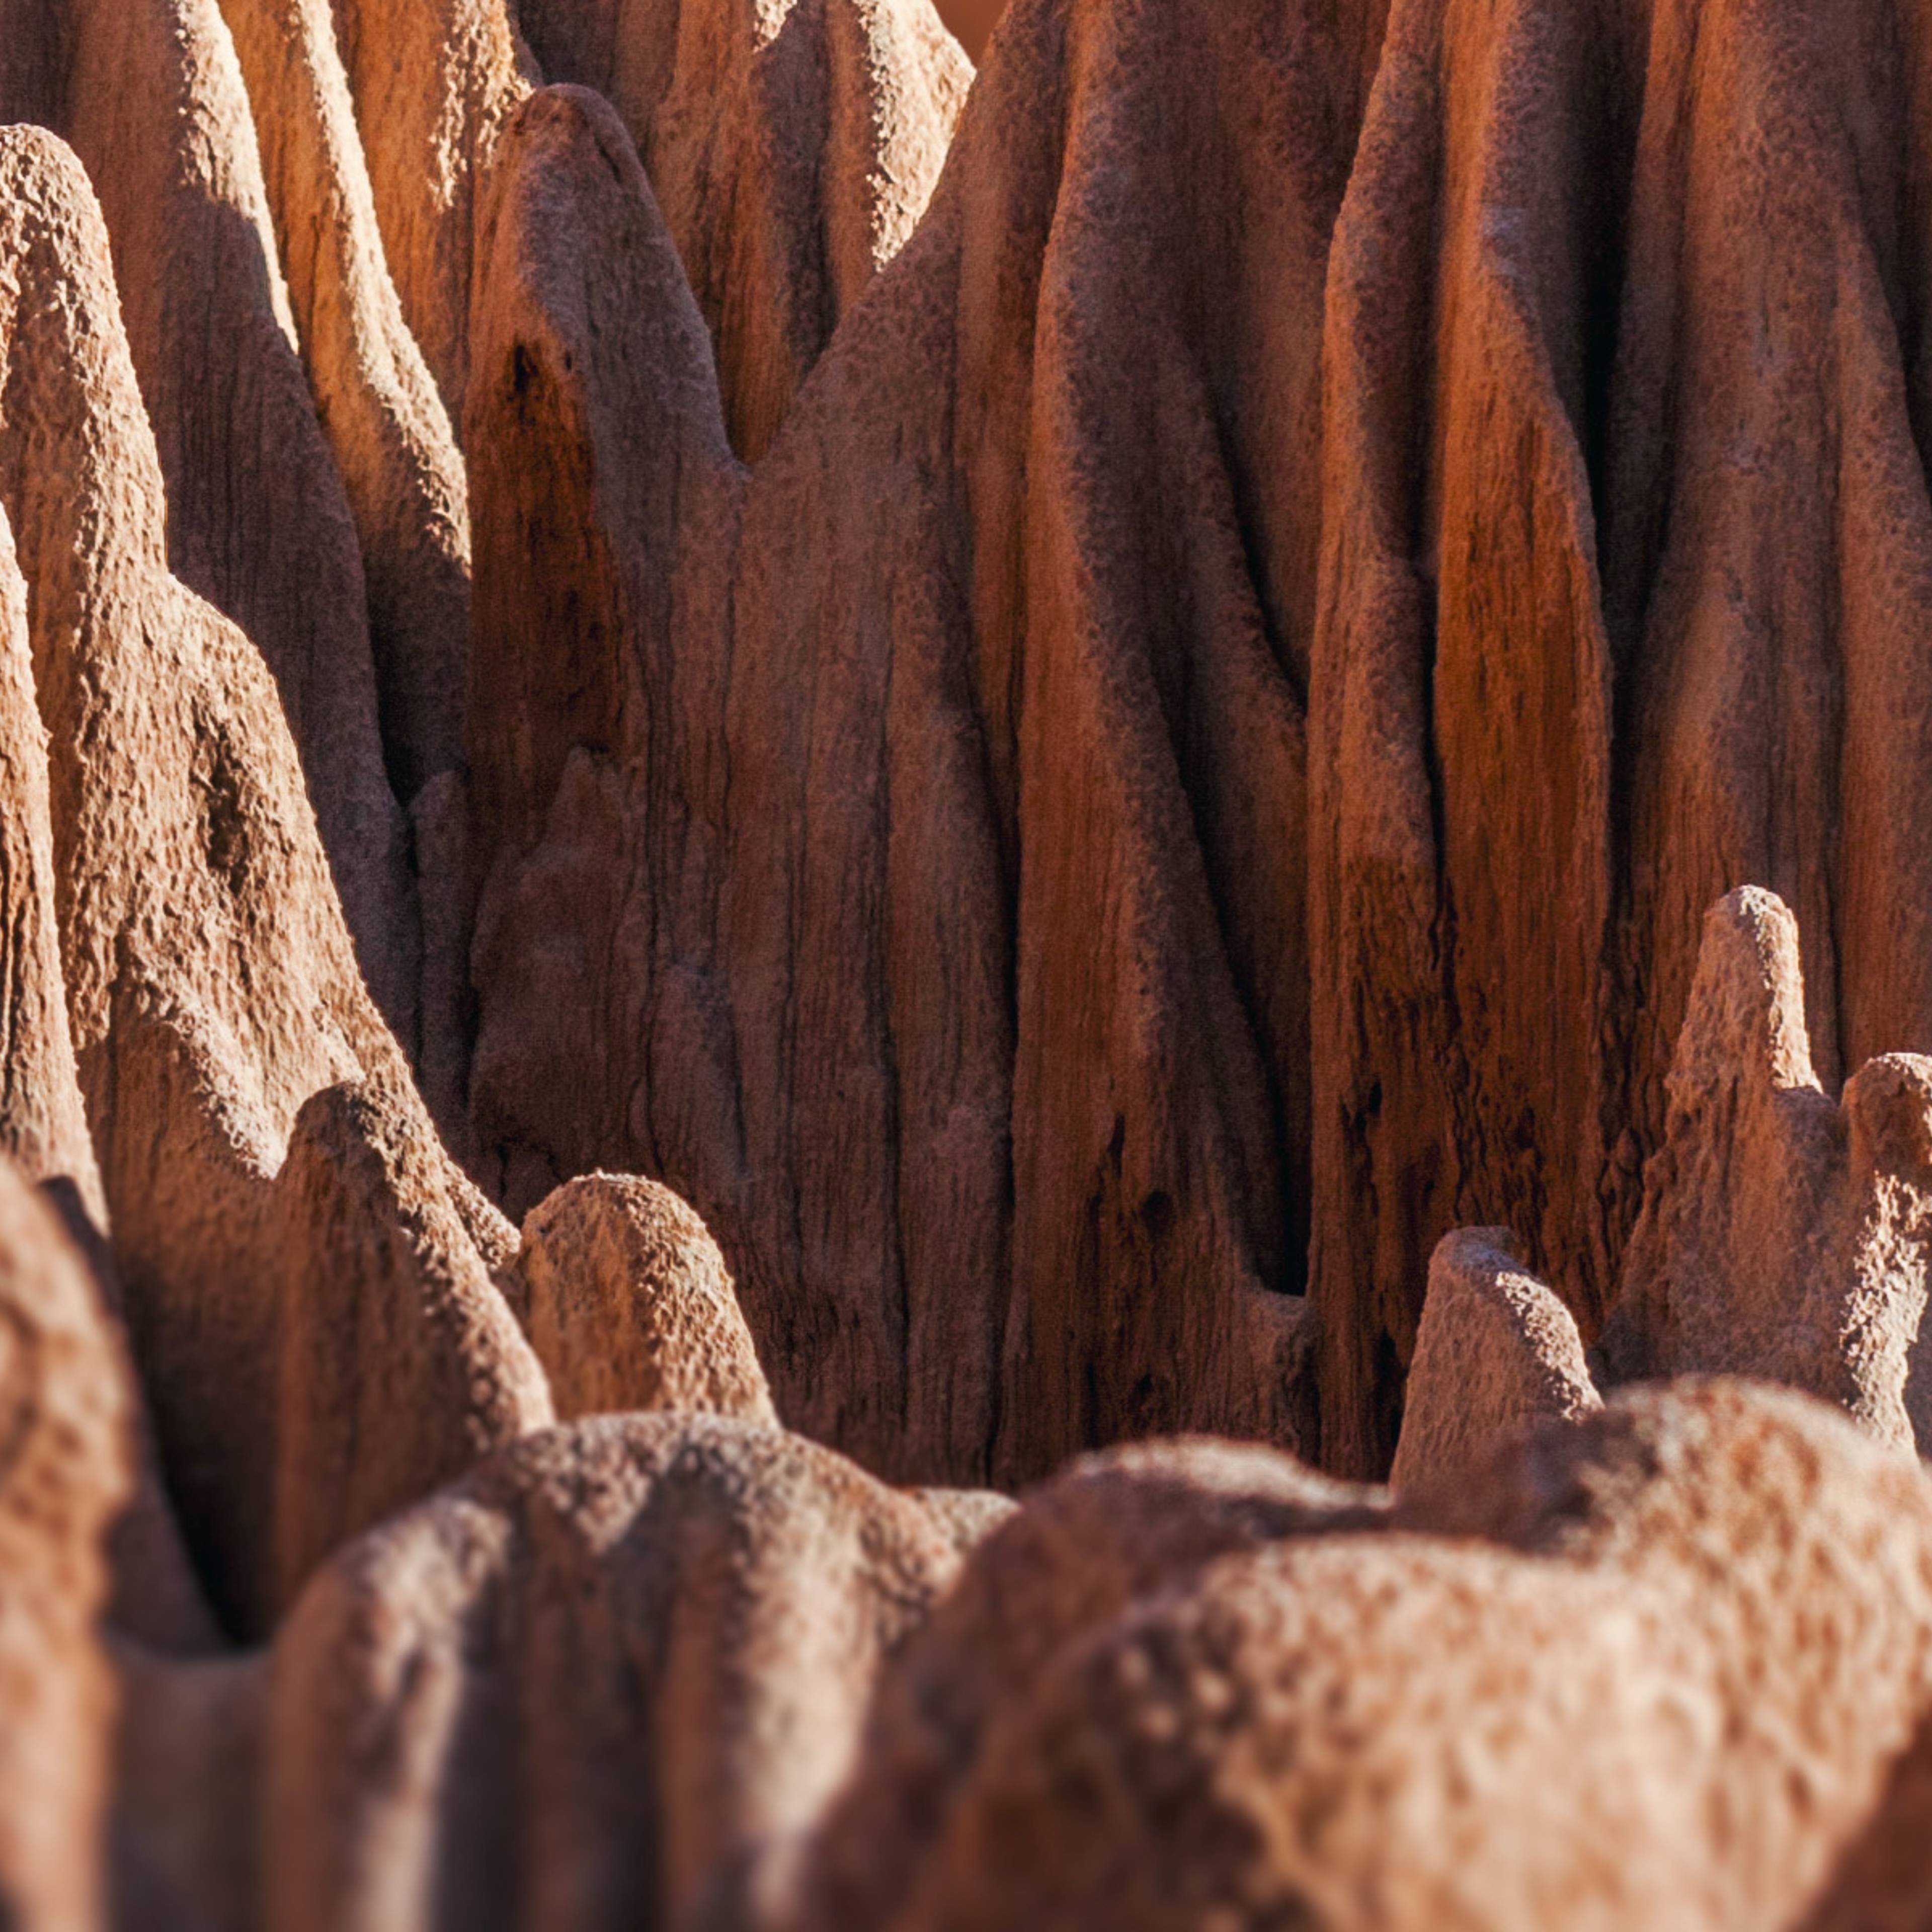 El tsingy rojo de Antsiranana, Madagascar. Karsts naturales ma